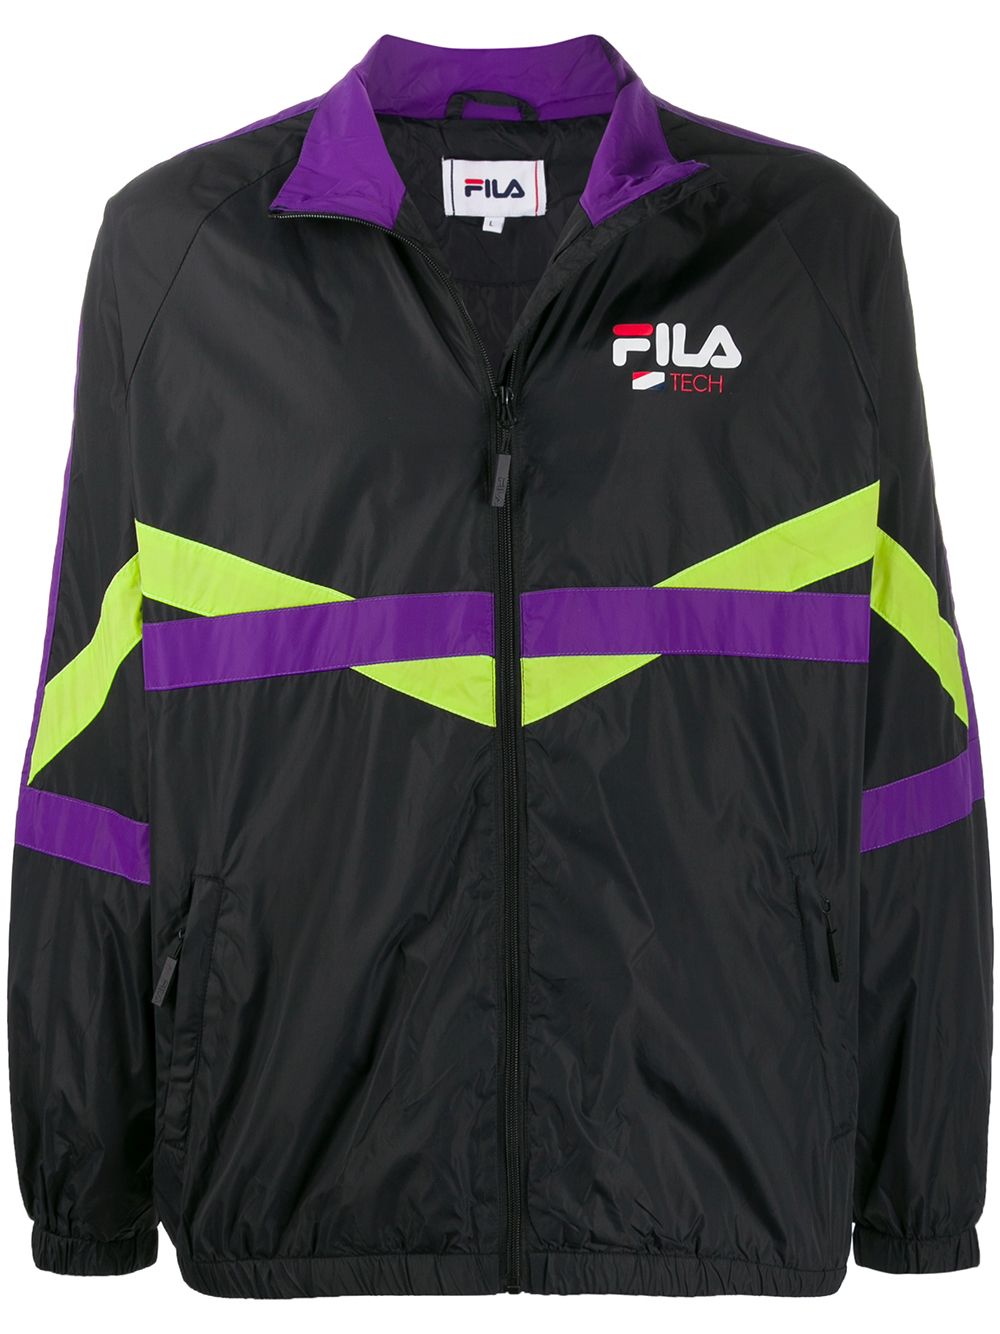 фото Fila спортивная куртка с контрастными полосками